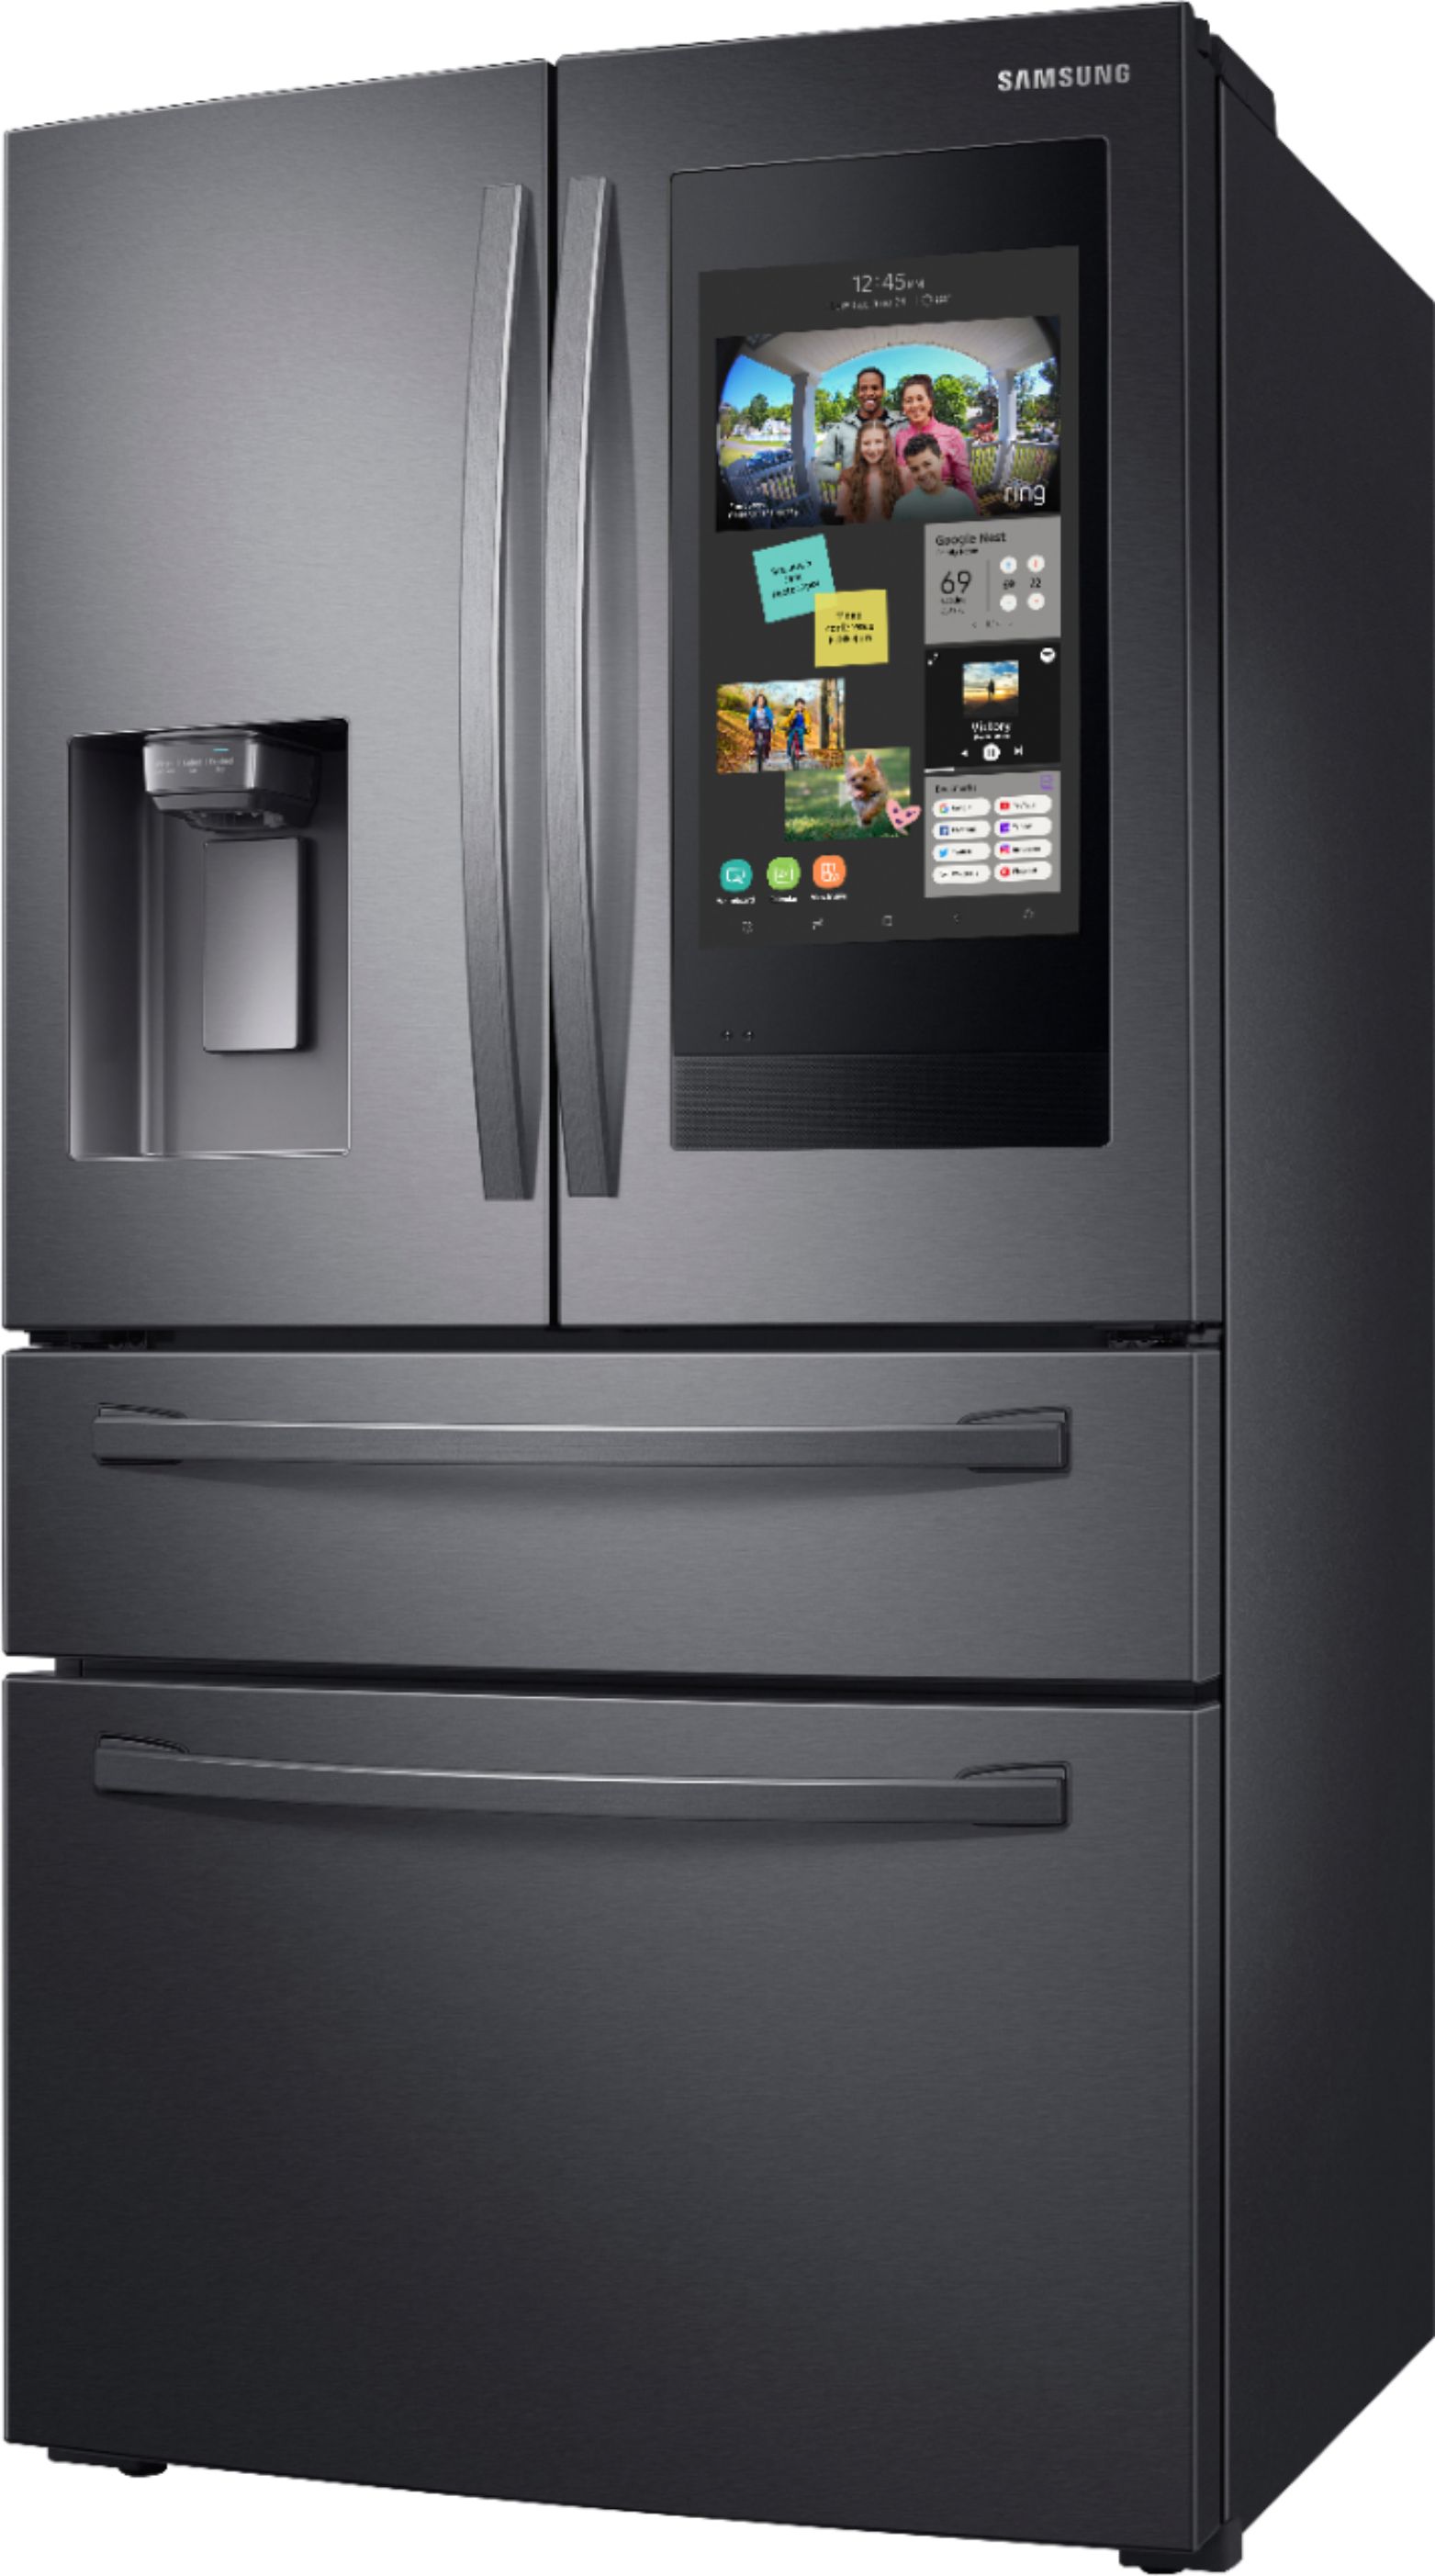 Left View: Samsung - Family Hub 27.7 Cu. Ft. 4-Door French Door  Fingerprint Resistant Refrigerator - Black stainless steel